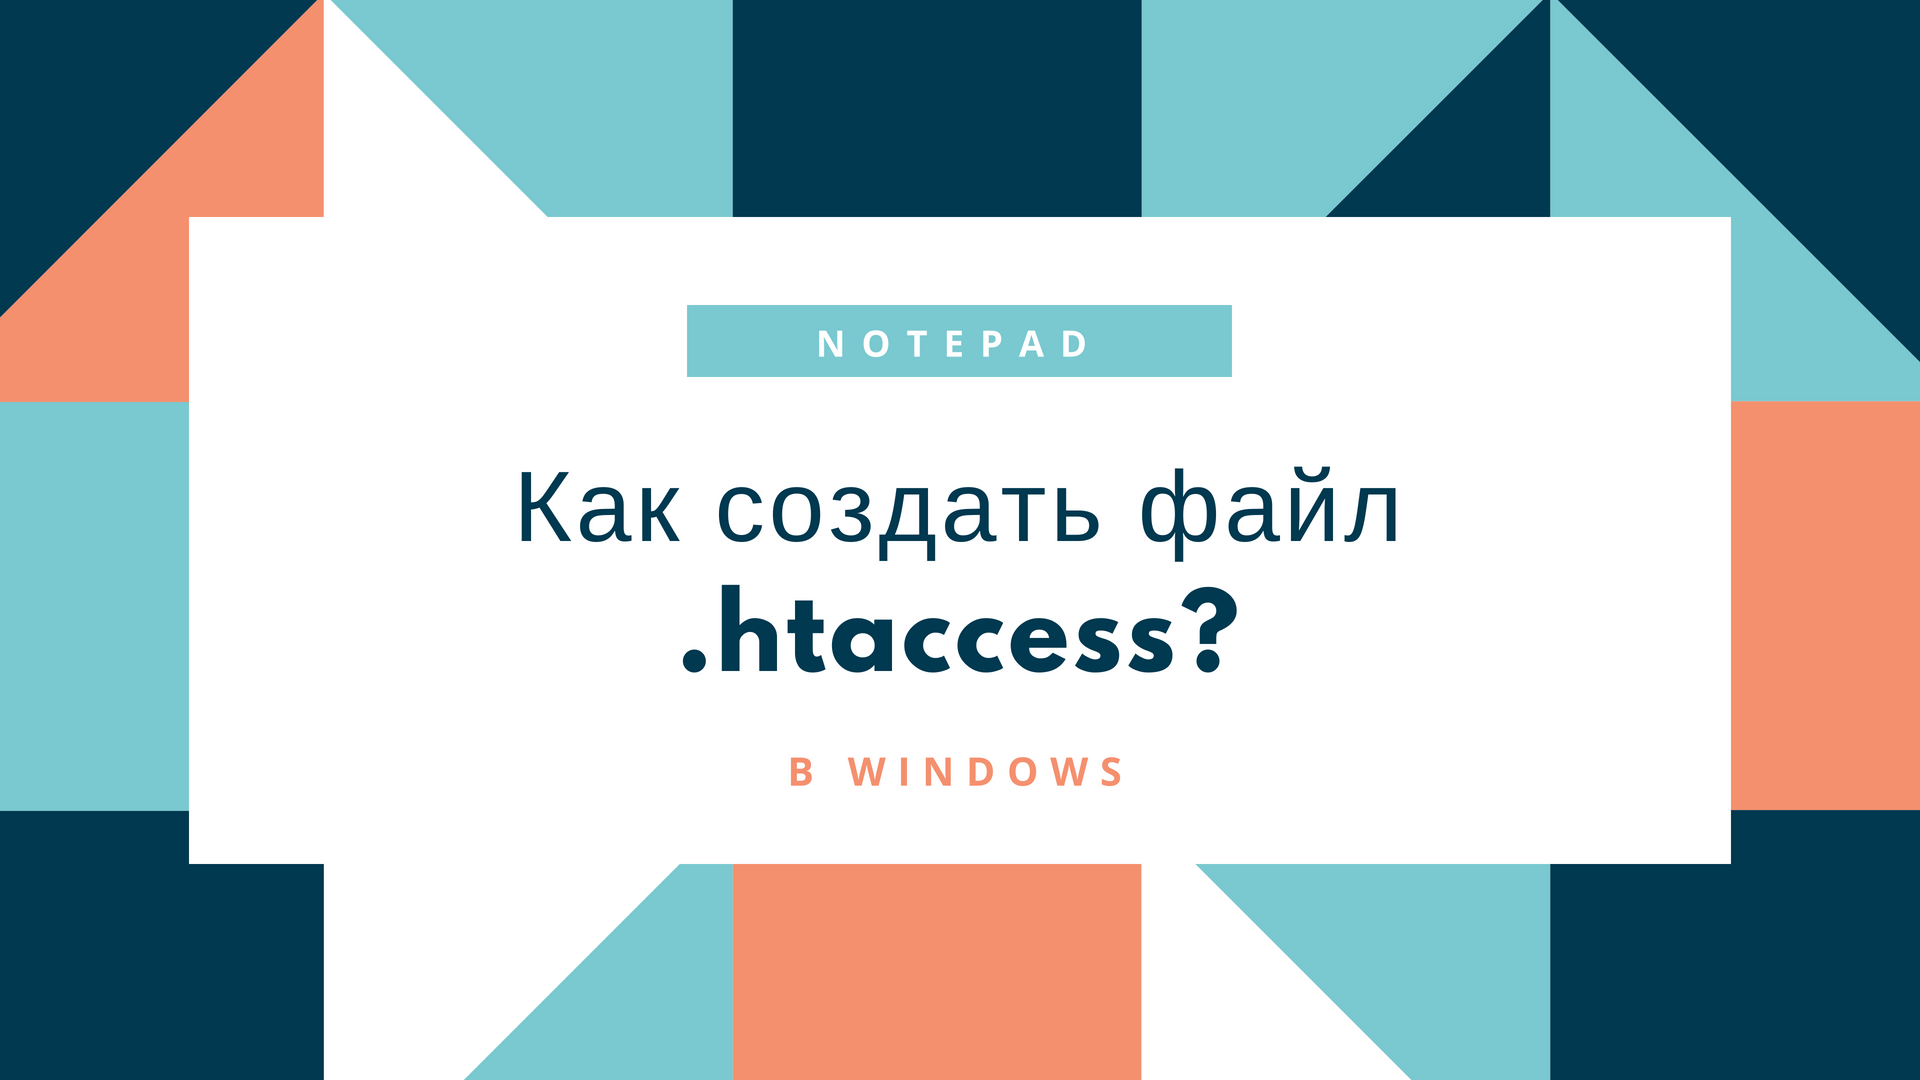 Как создать файл .htaccess?